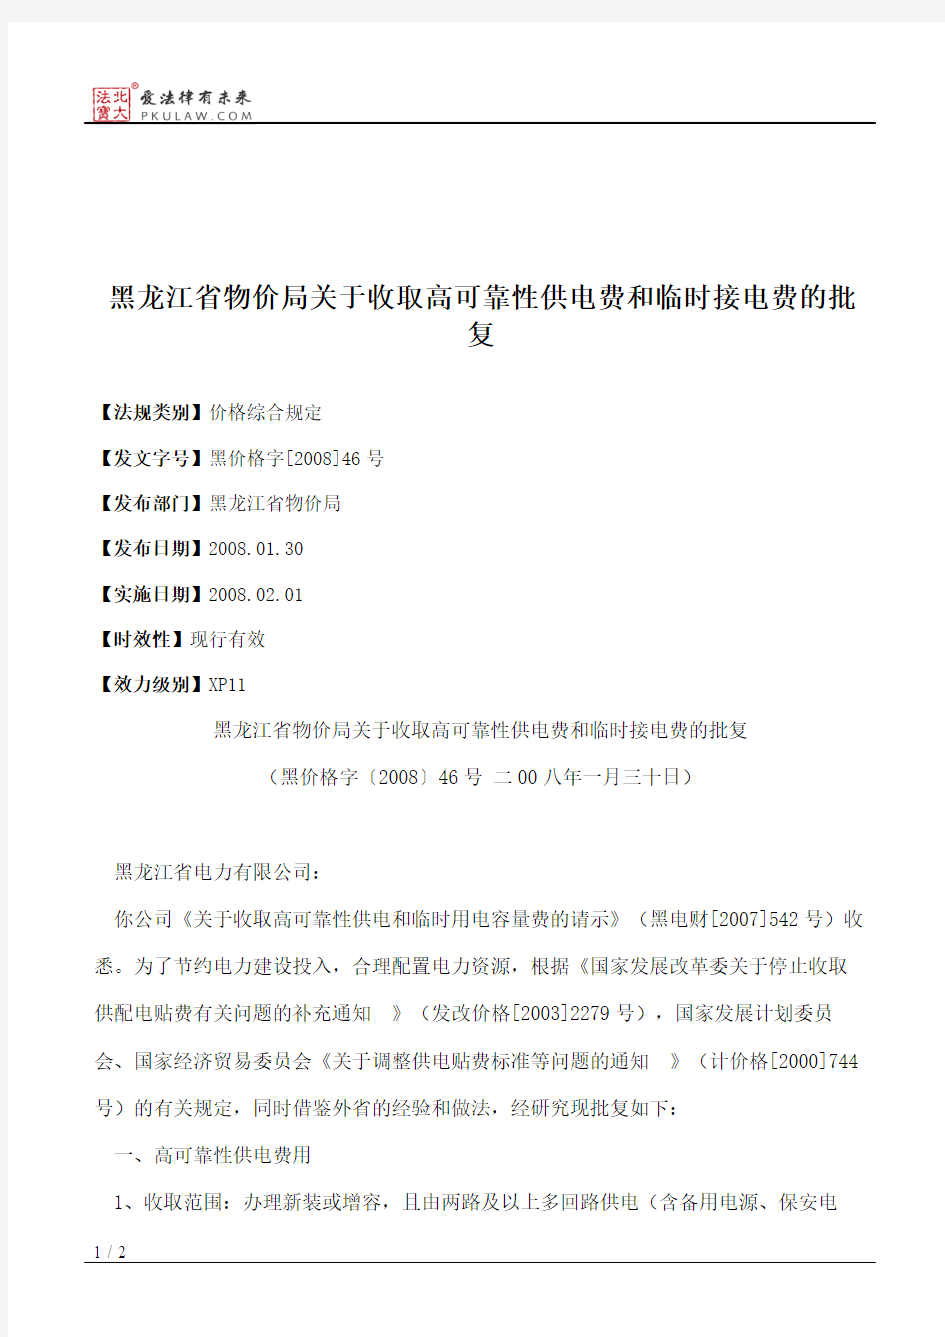 黑龙江省物价局关于收取高可靠性供电费和临时接电费的批复